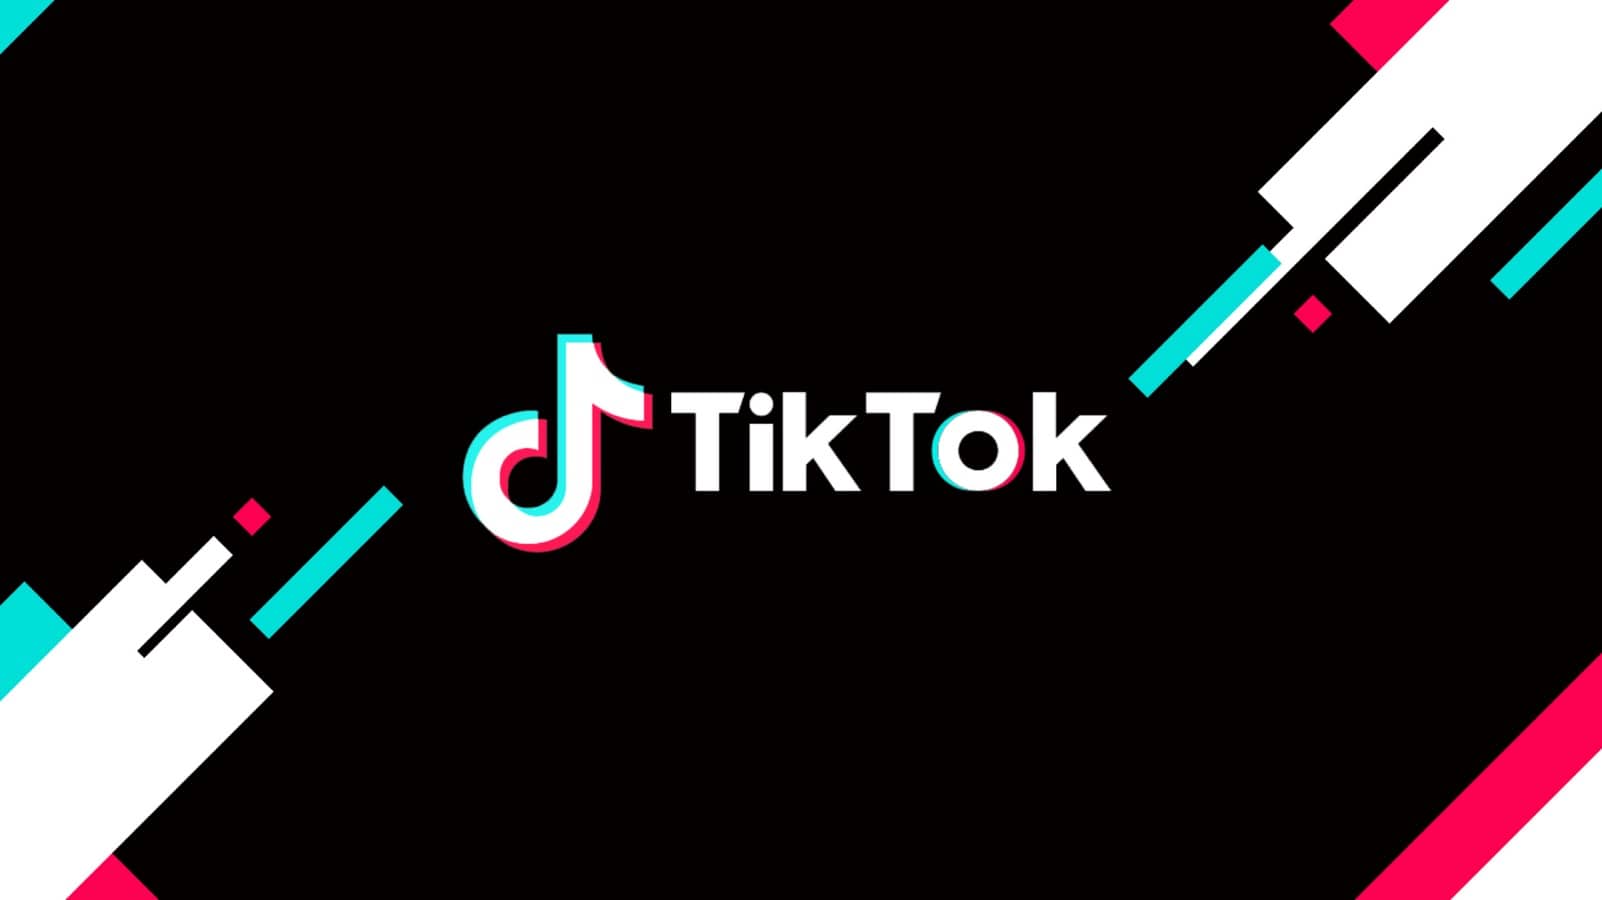 TikTok desbanca Google e Facebook na liderança de tráfego da internet